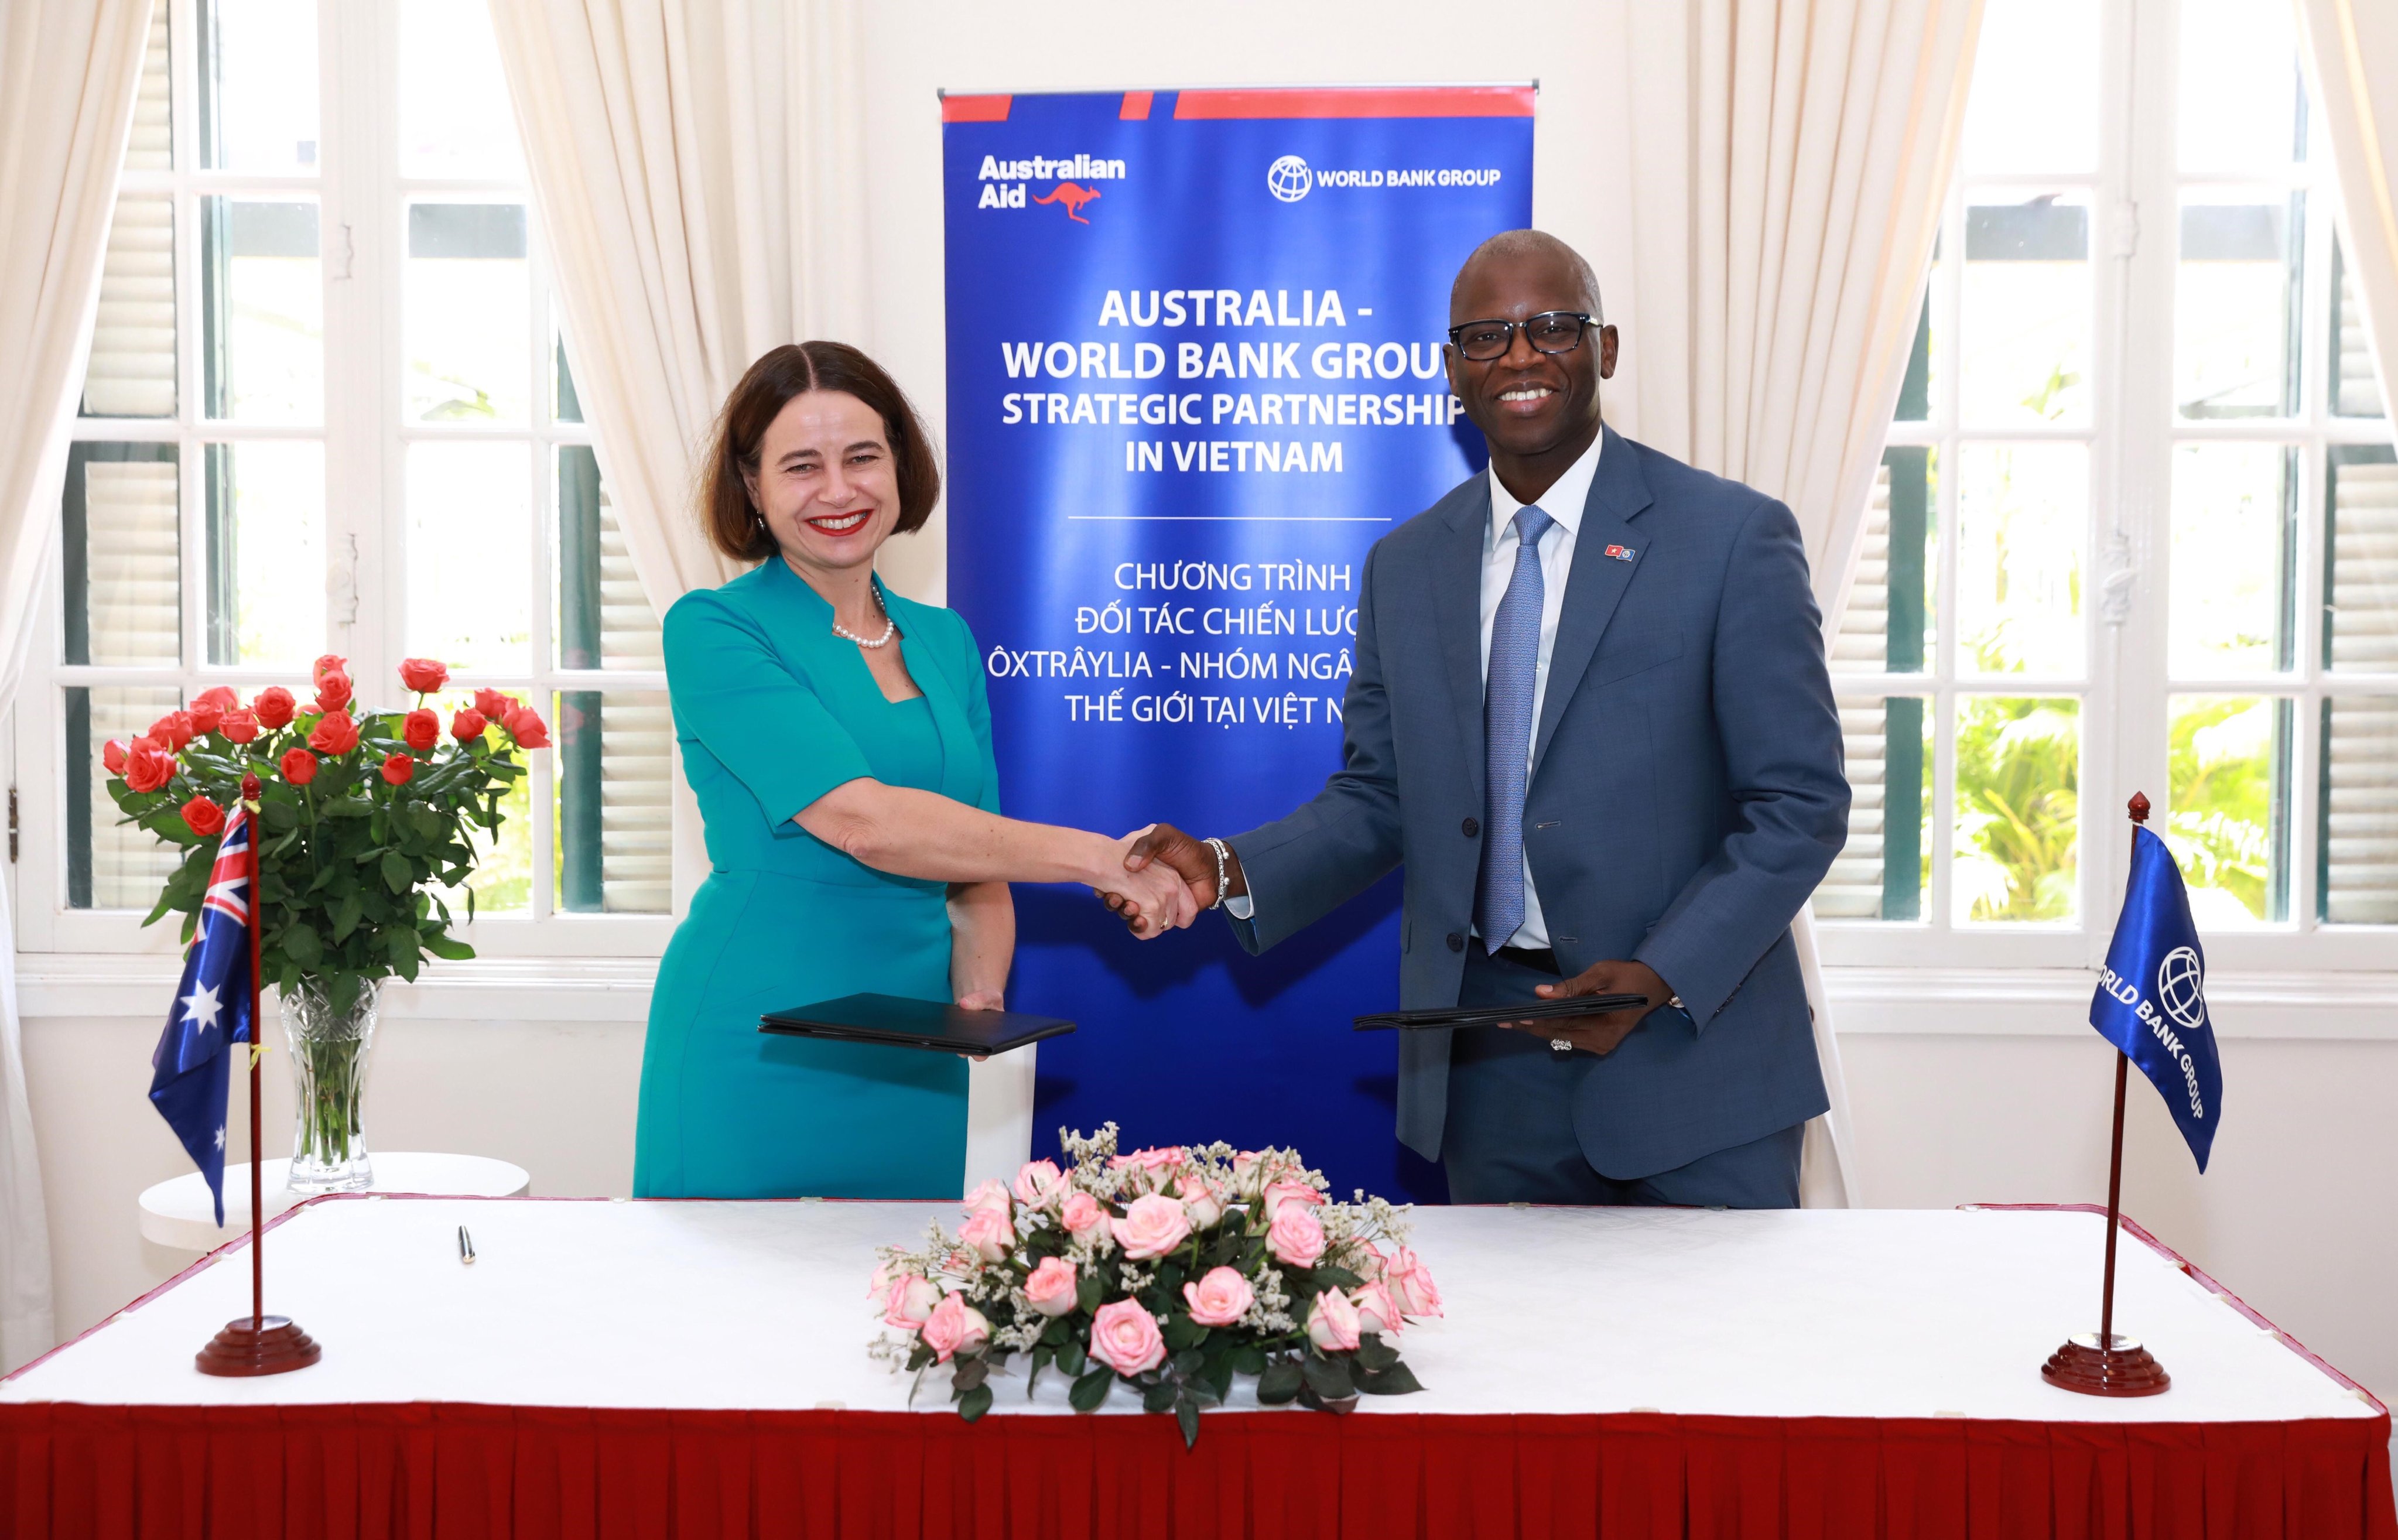 Đại sứ Australia tại Việt Nam Robyn Mudie và Giám đốc quốc gia Ngân hàng Thế giới tại Việt Nam Ousmane Dione ký kết khoản viện trợ bổ sung trị giá 5 triệu đô la Australia trong khuôn khổ Chương trình Hợp tác chiến lược Chính phủ Australia – Nhóm Ngân hàng Thế giới.